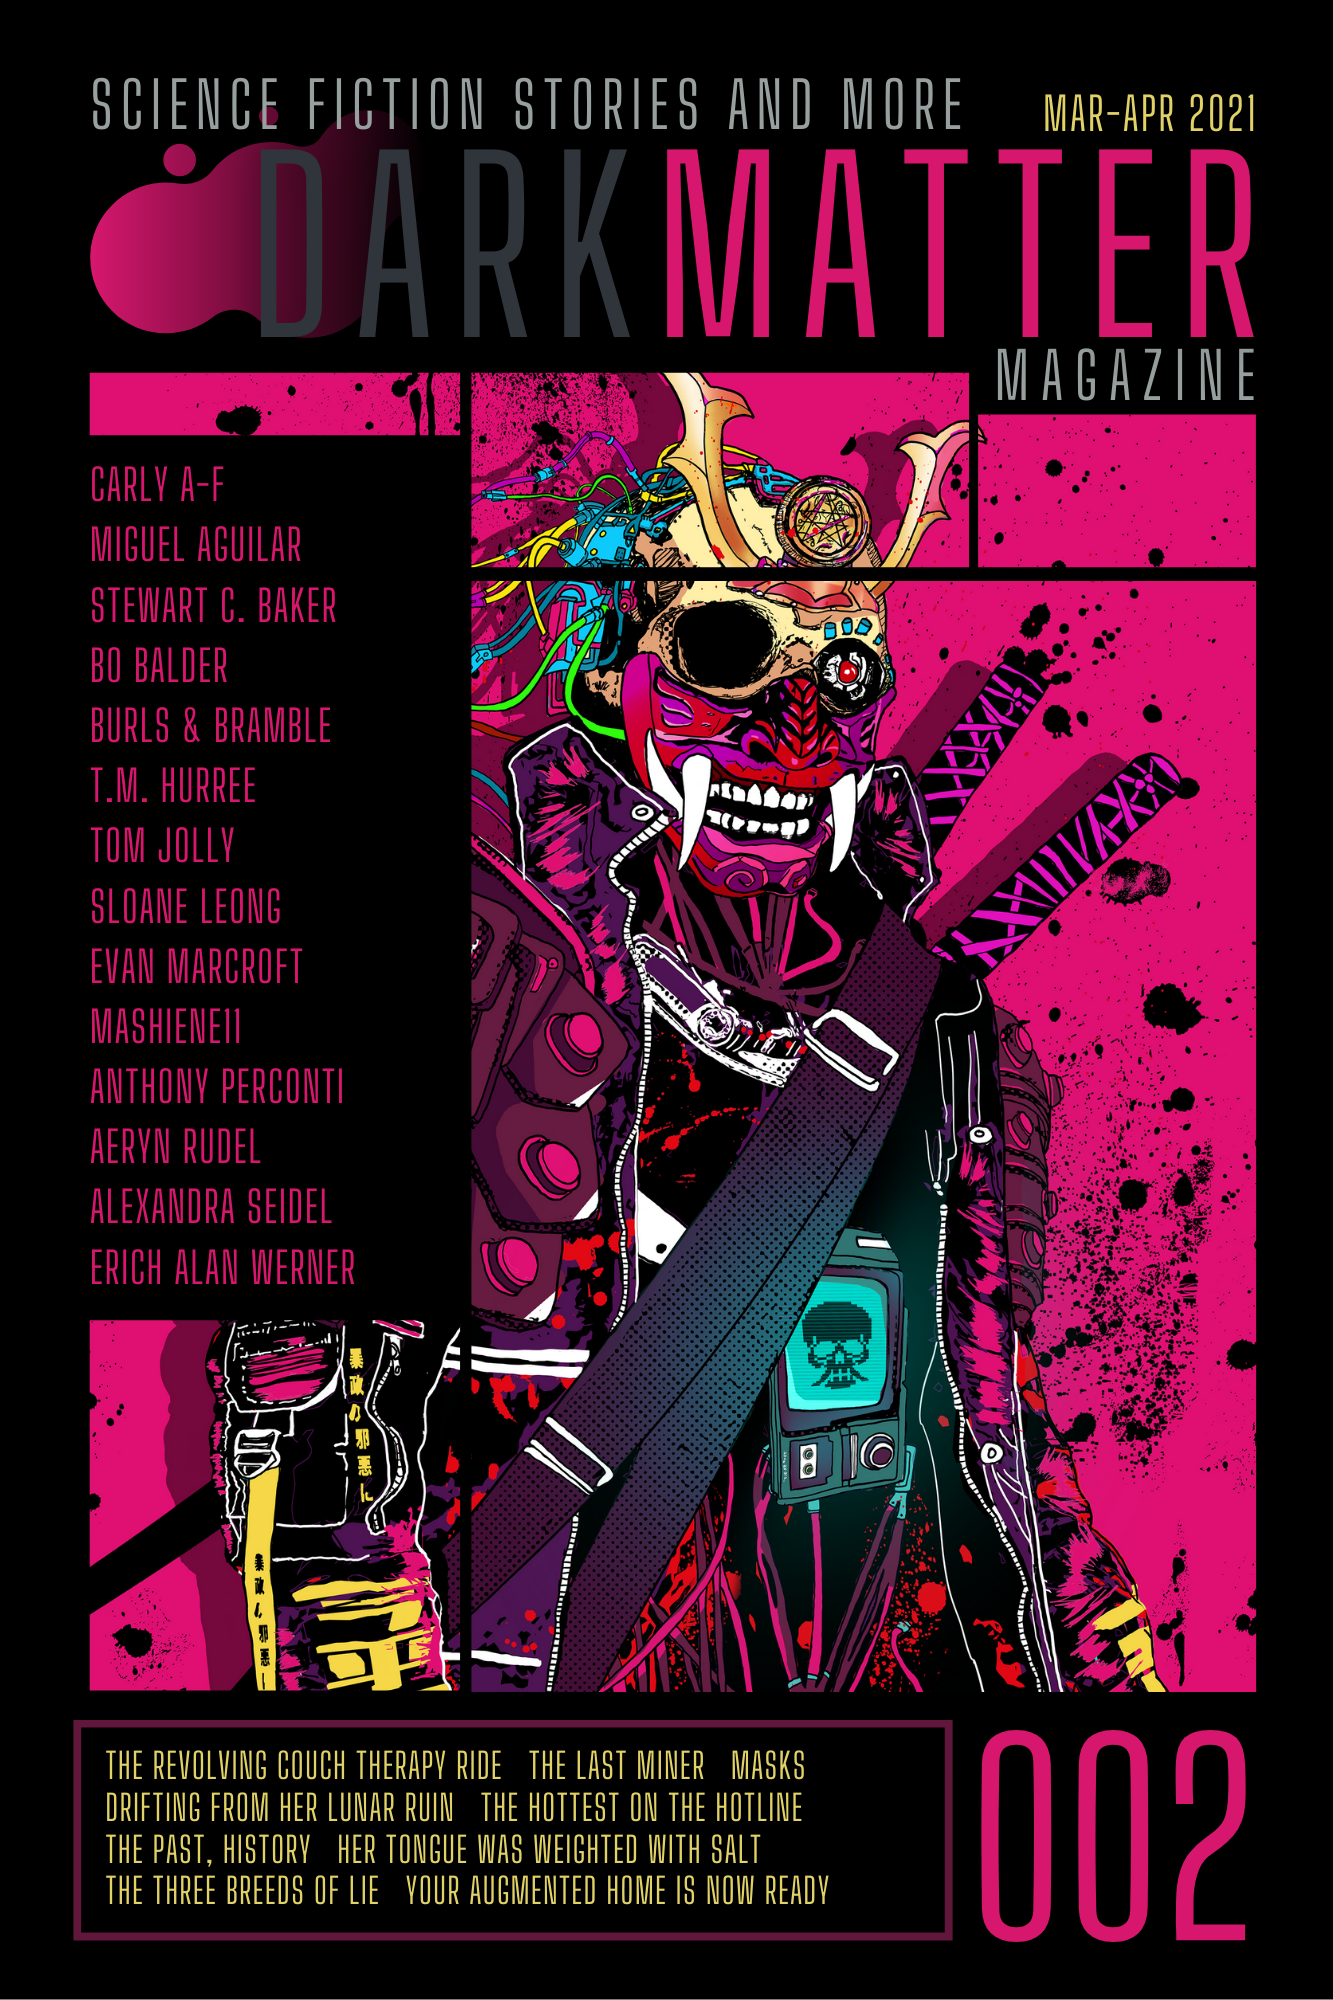 Dark Matter Magazine Issue 002 Mar-Apr 2021 - Dark Matter Magazine